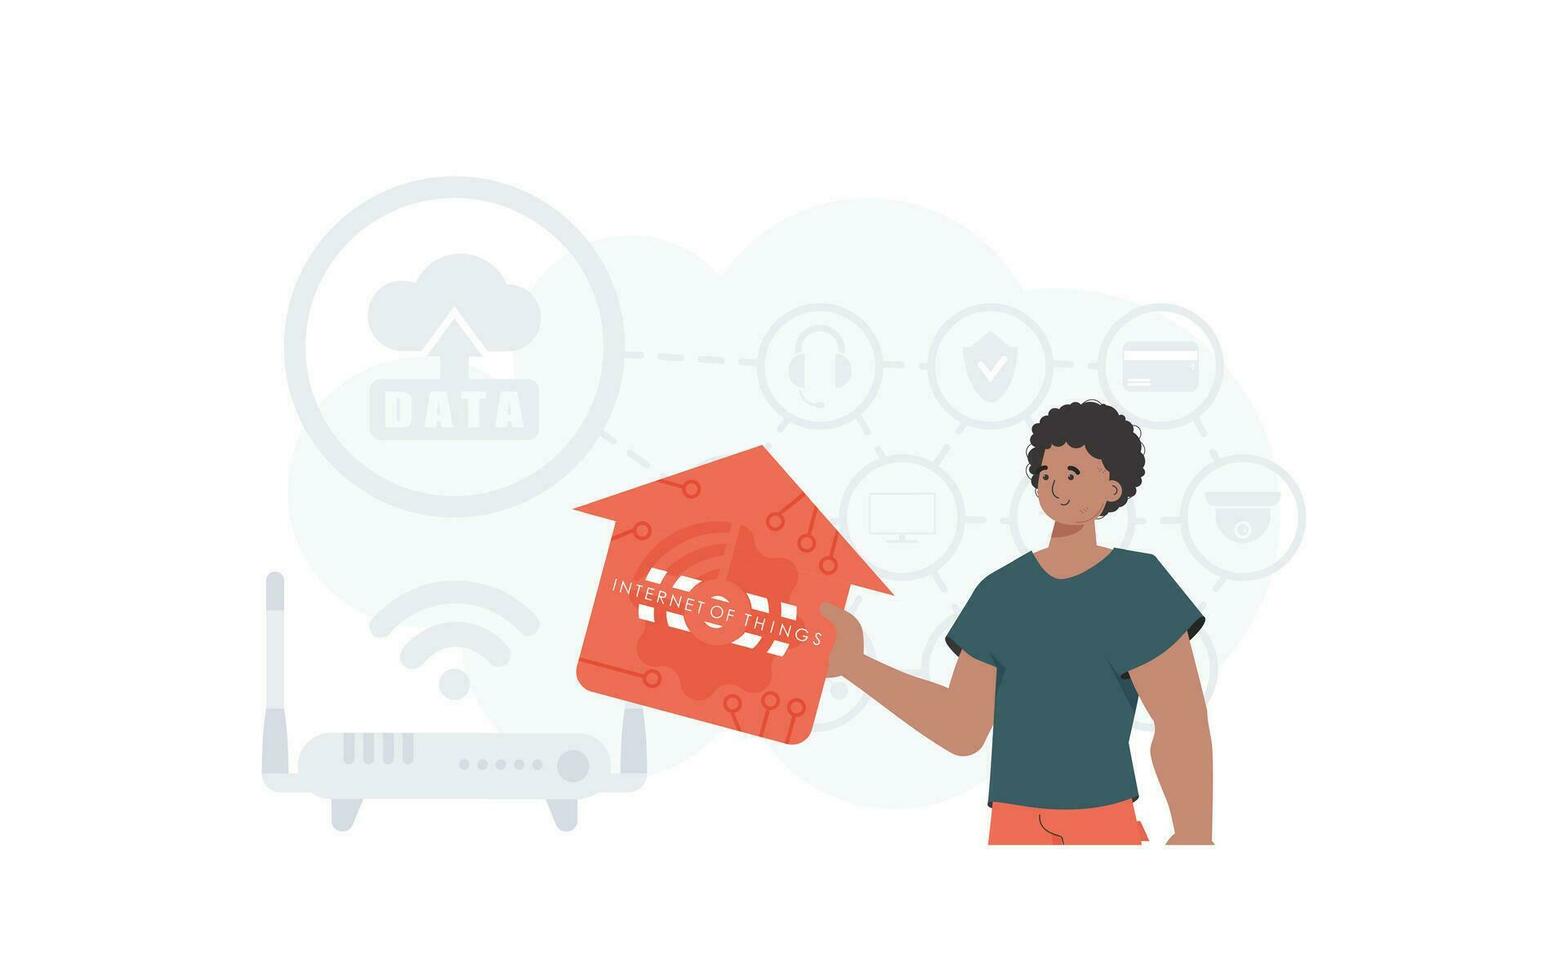 de man är avbildad midjedjup, innehav ett ikon av en hus i hans händer. internet av saker och automatisering begrepp. Bra för presentationer och webbplatser. vektor illustration i platt stil.